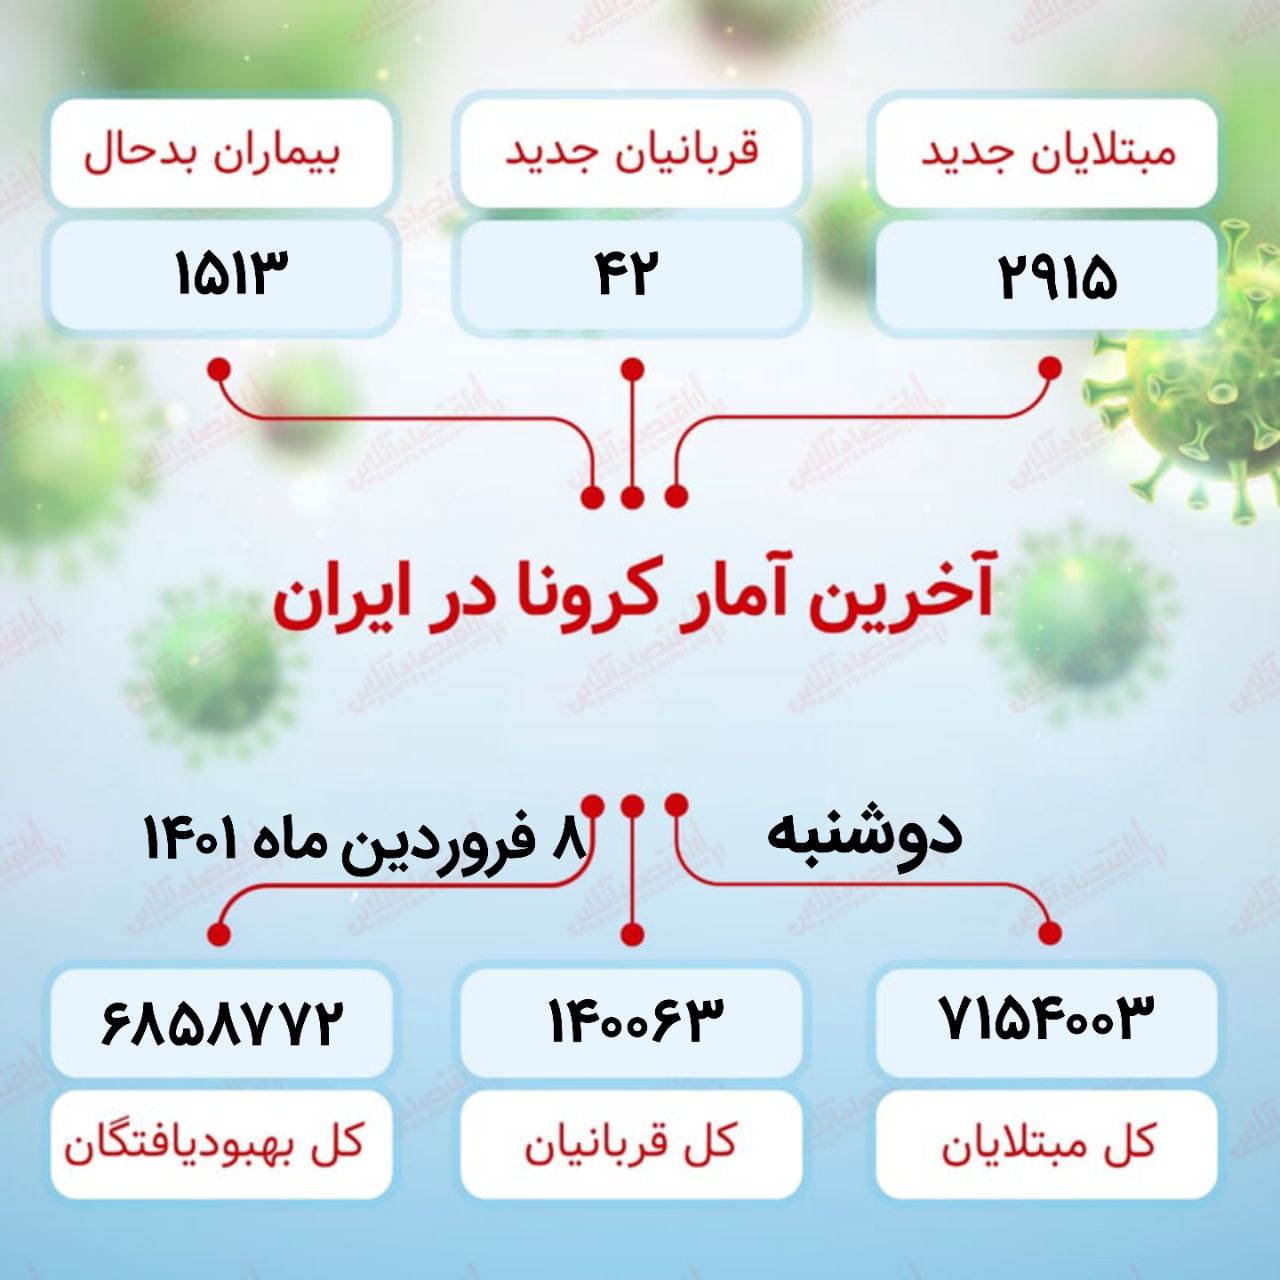 آخرین آمار کرونا در ایران (۱۴۰۱/۱/۸)
